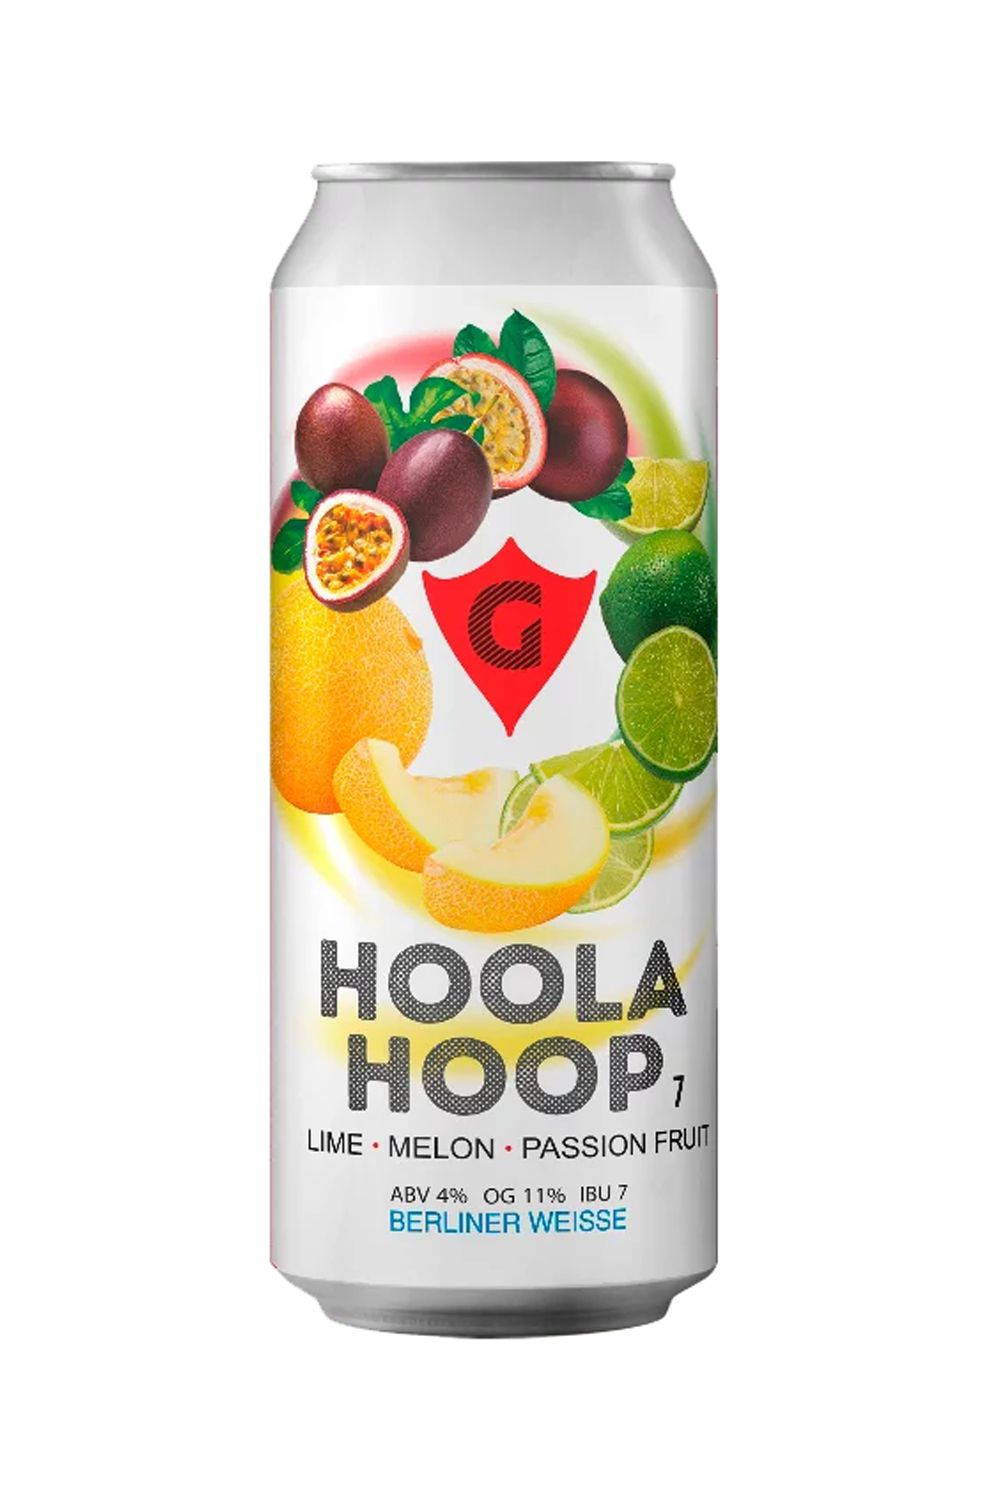 Пиво Гуси Берлинер вайс Дыня-лайм (Hoola hoop 7) 4,0% ж/б 0,5 л